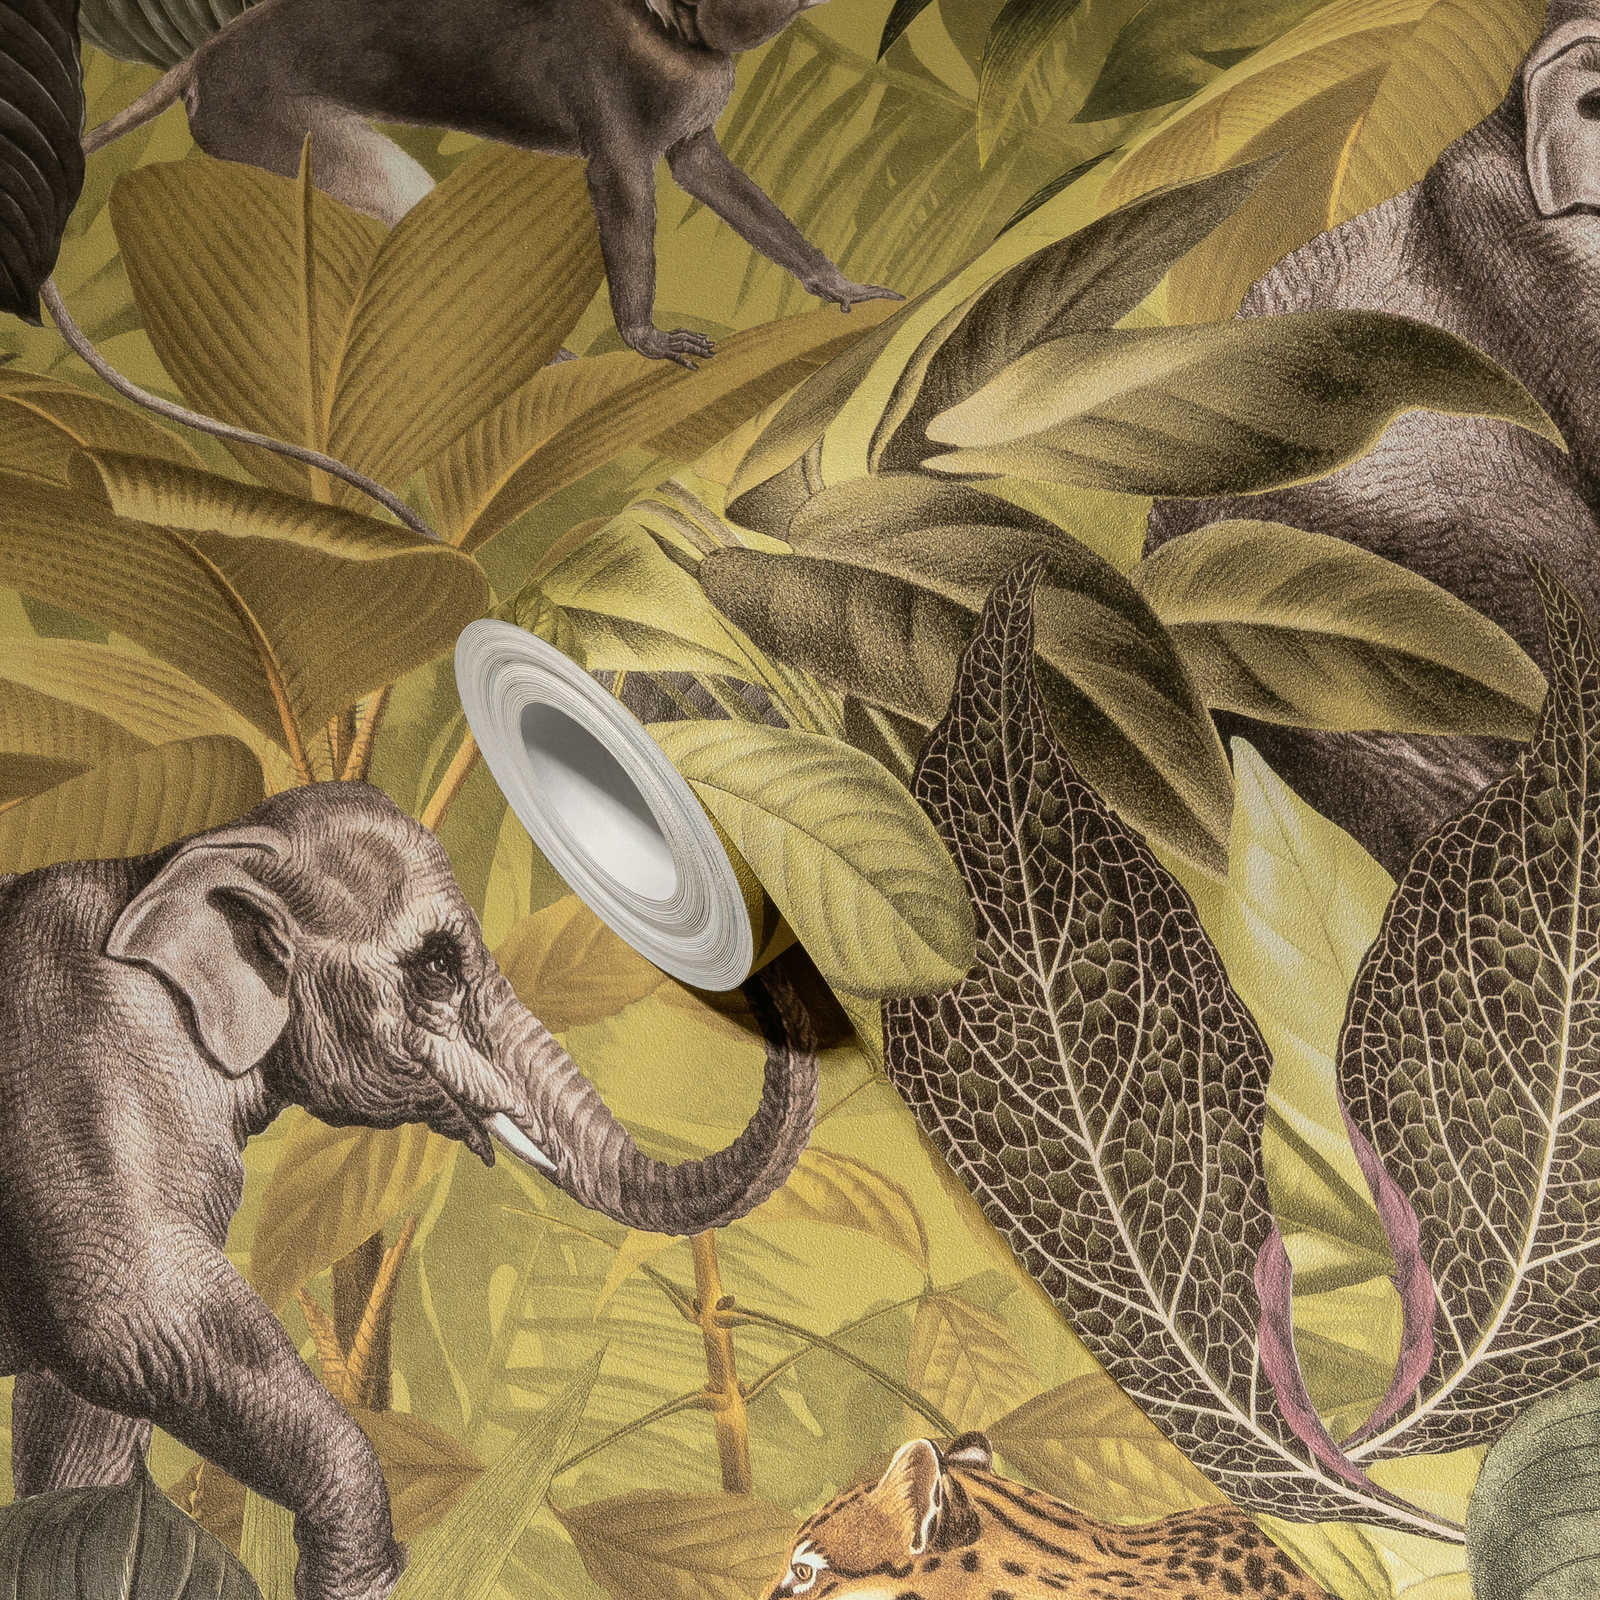             Dschungel Tapete mit Tieren, Kindermotiv – Braun, Grün
        